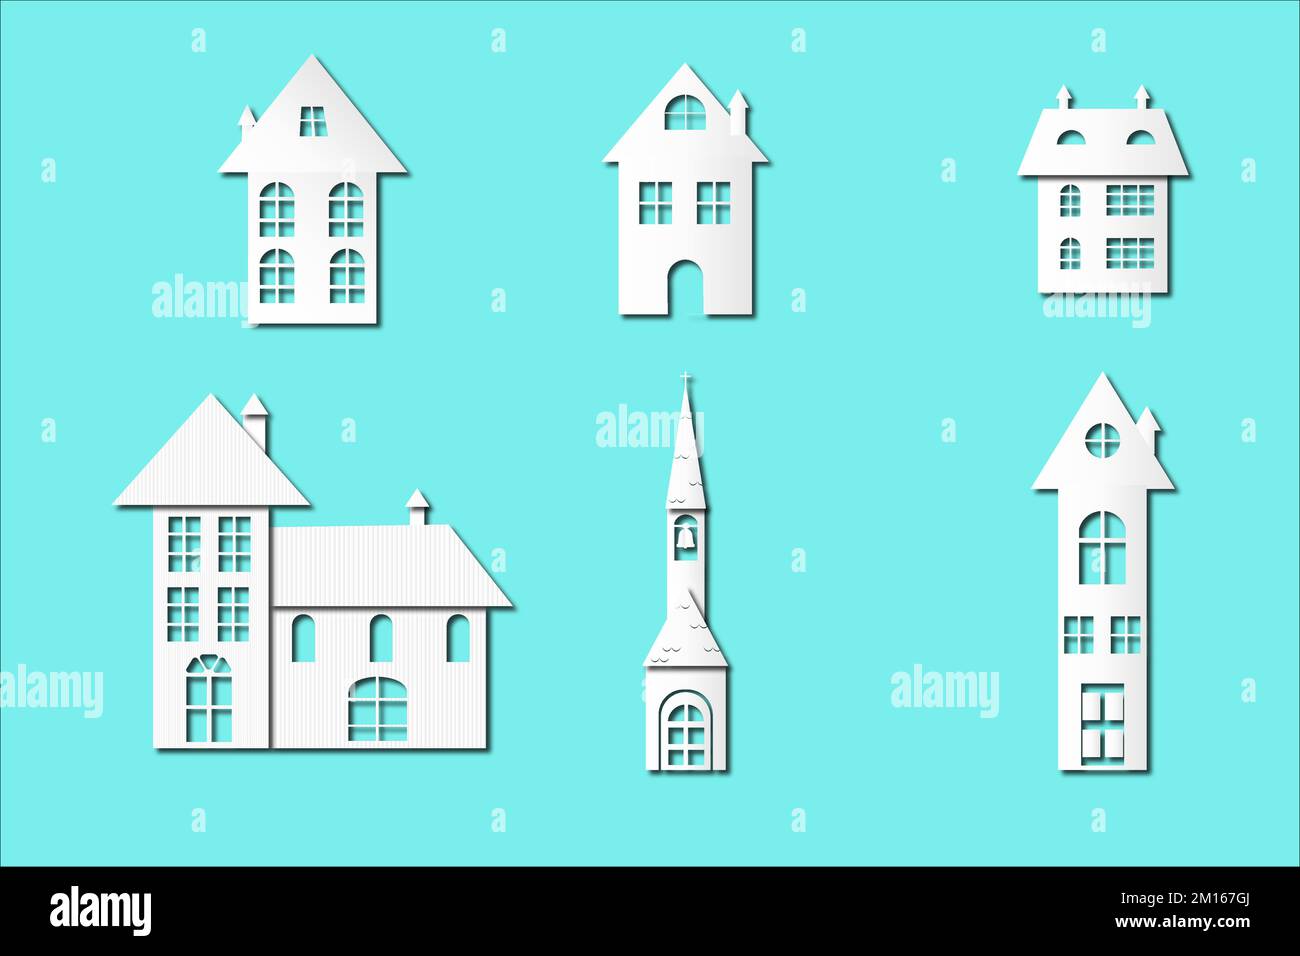 casas cortadas de papel de navidad e iglesia con muchas ventanas y chimeneas, aisladas sobre fondo turquesa. Todo blanco con un tono que recuerda el co Ilustración del Vector